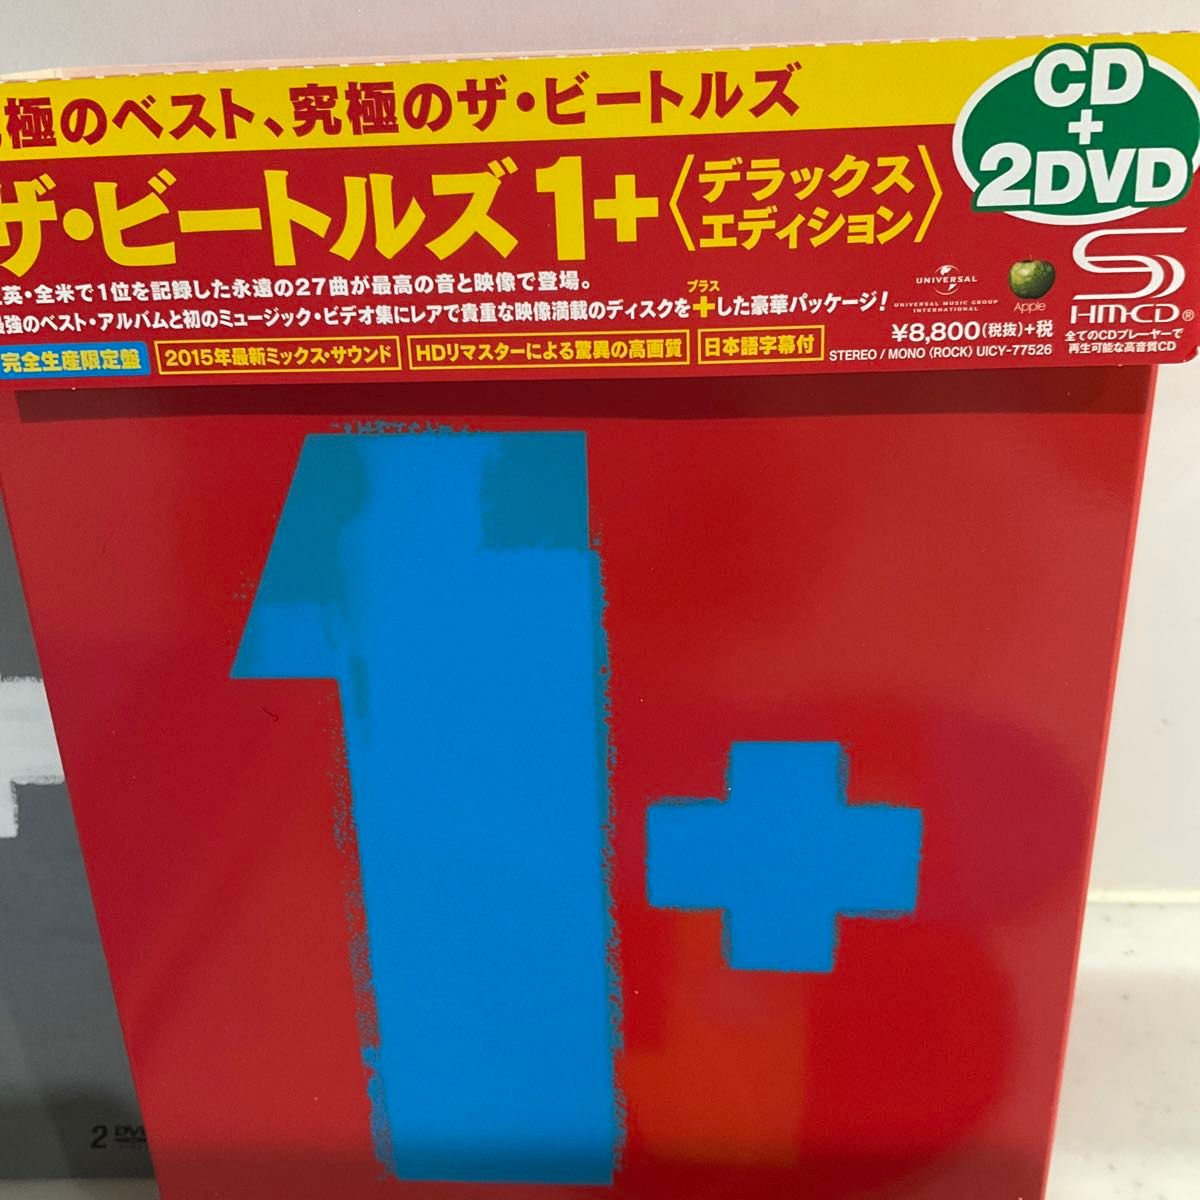 ザビートルズ 1+ ~デラックスエディション~ (完全生産限定盤) (CD+2DVD)